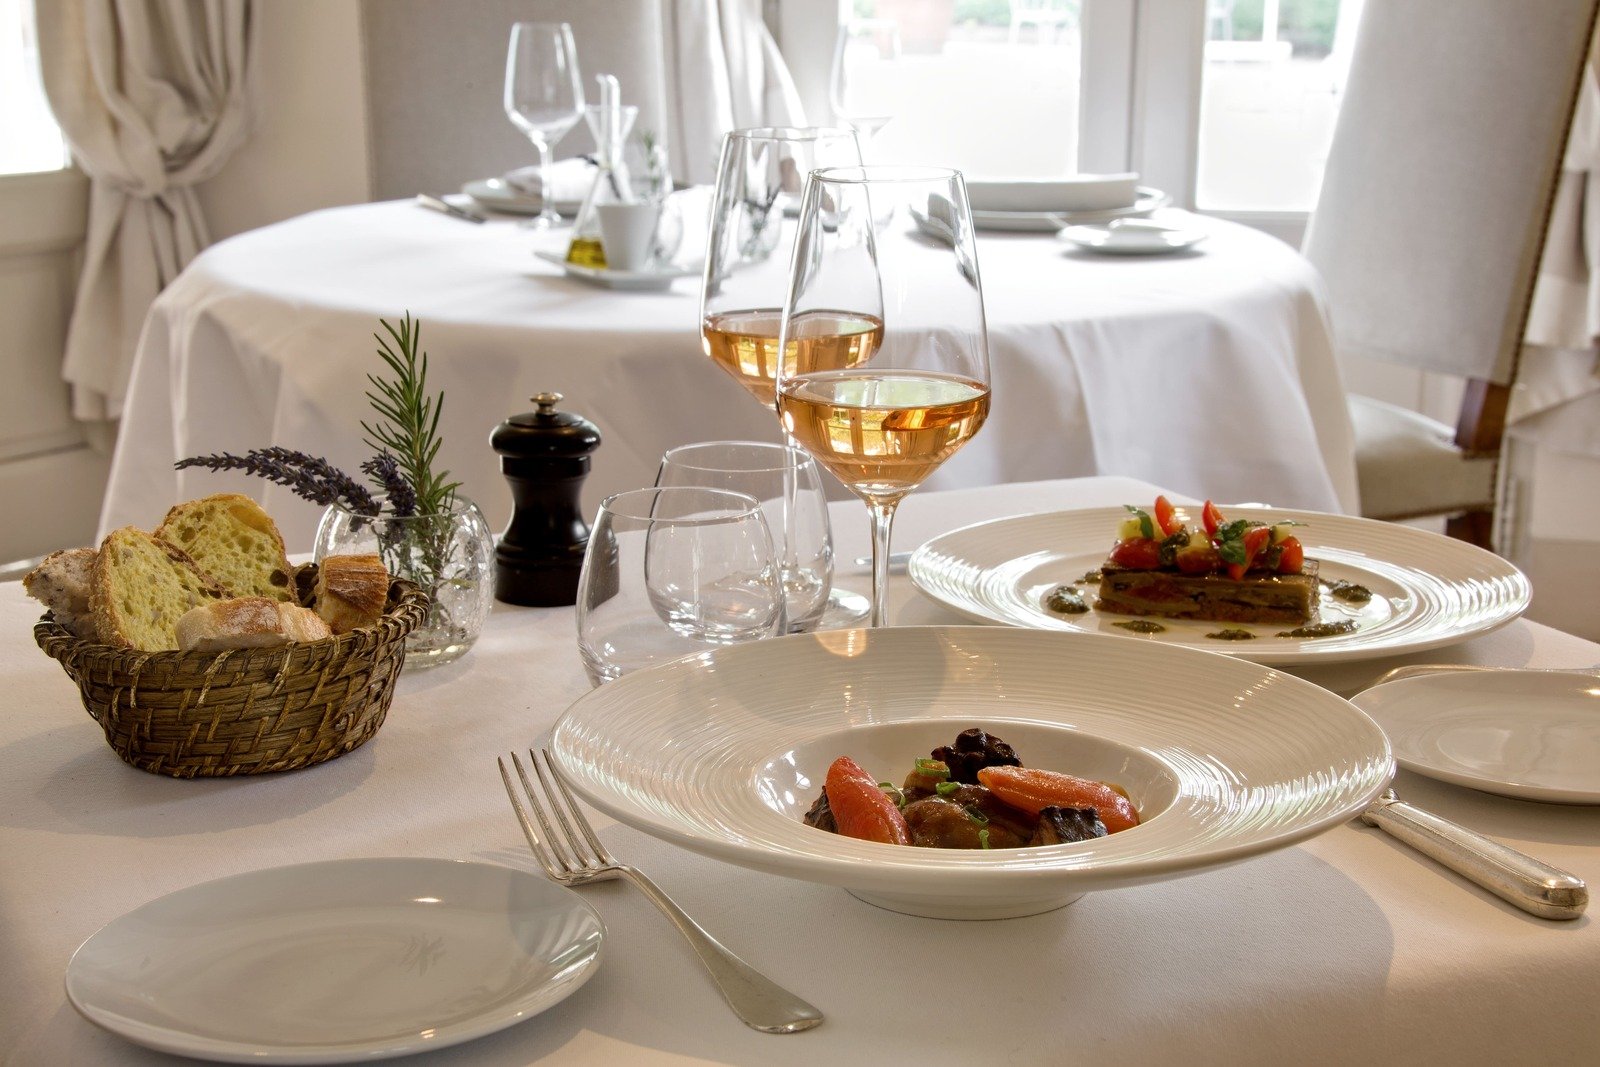 Luxury boutique hotel Benvengudo 4 stars Les Baux-de-Provence France gastronomic restaurant Chef Julie Chaix